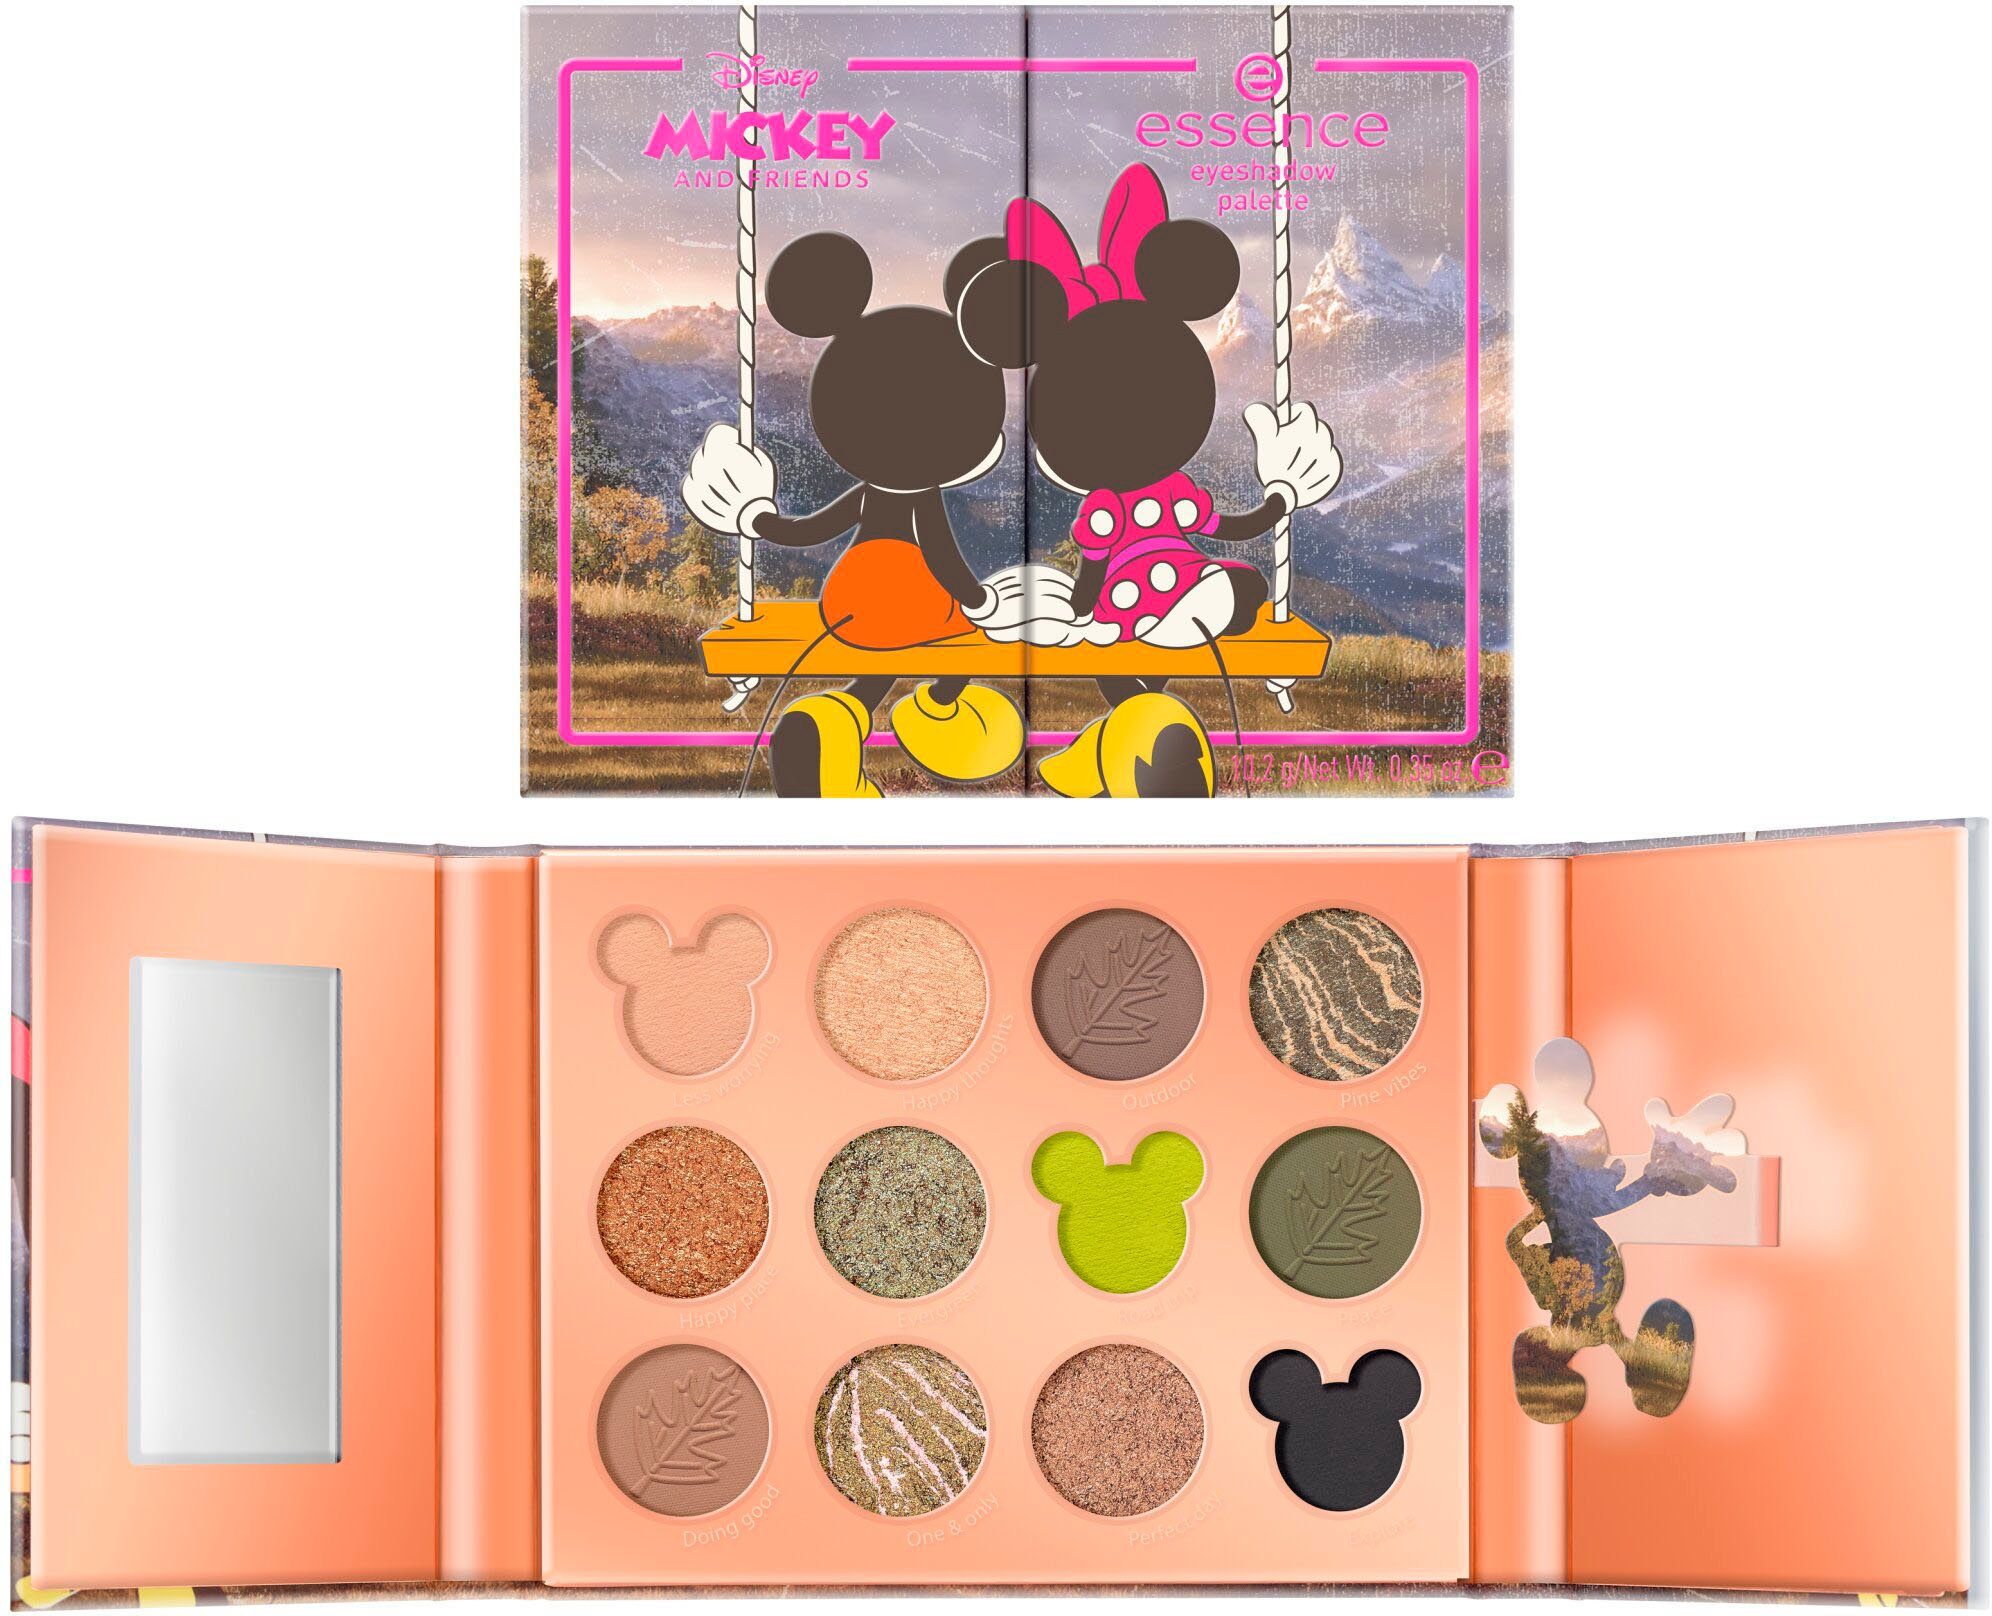 Augen-Make-Up für Looks Friends palette, eyeshadow and Mickey abwechslungsreiche Disney Lidschatten-Palette Essence